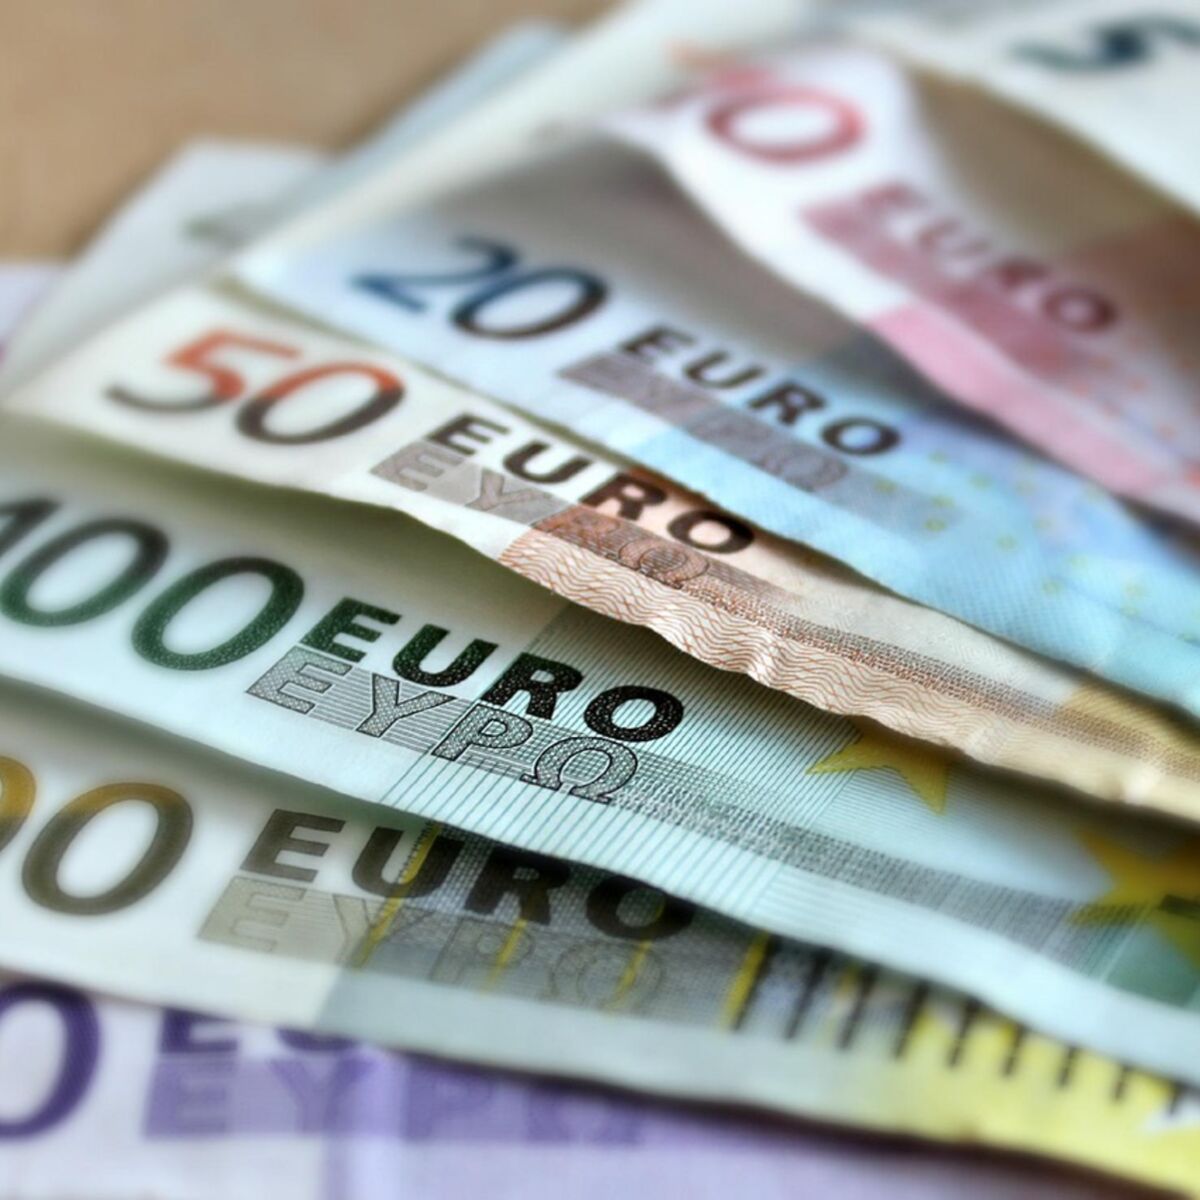 Contrefaçon : le nombre de saisies de faux billets en euros en forte hausse  -  - Vos actualités !